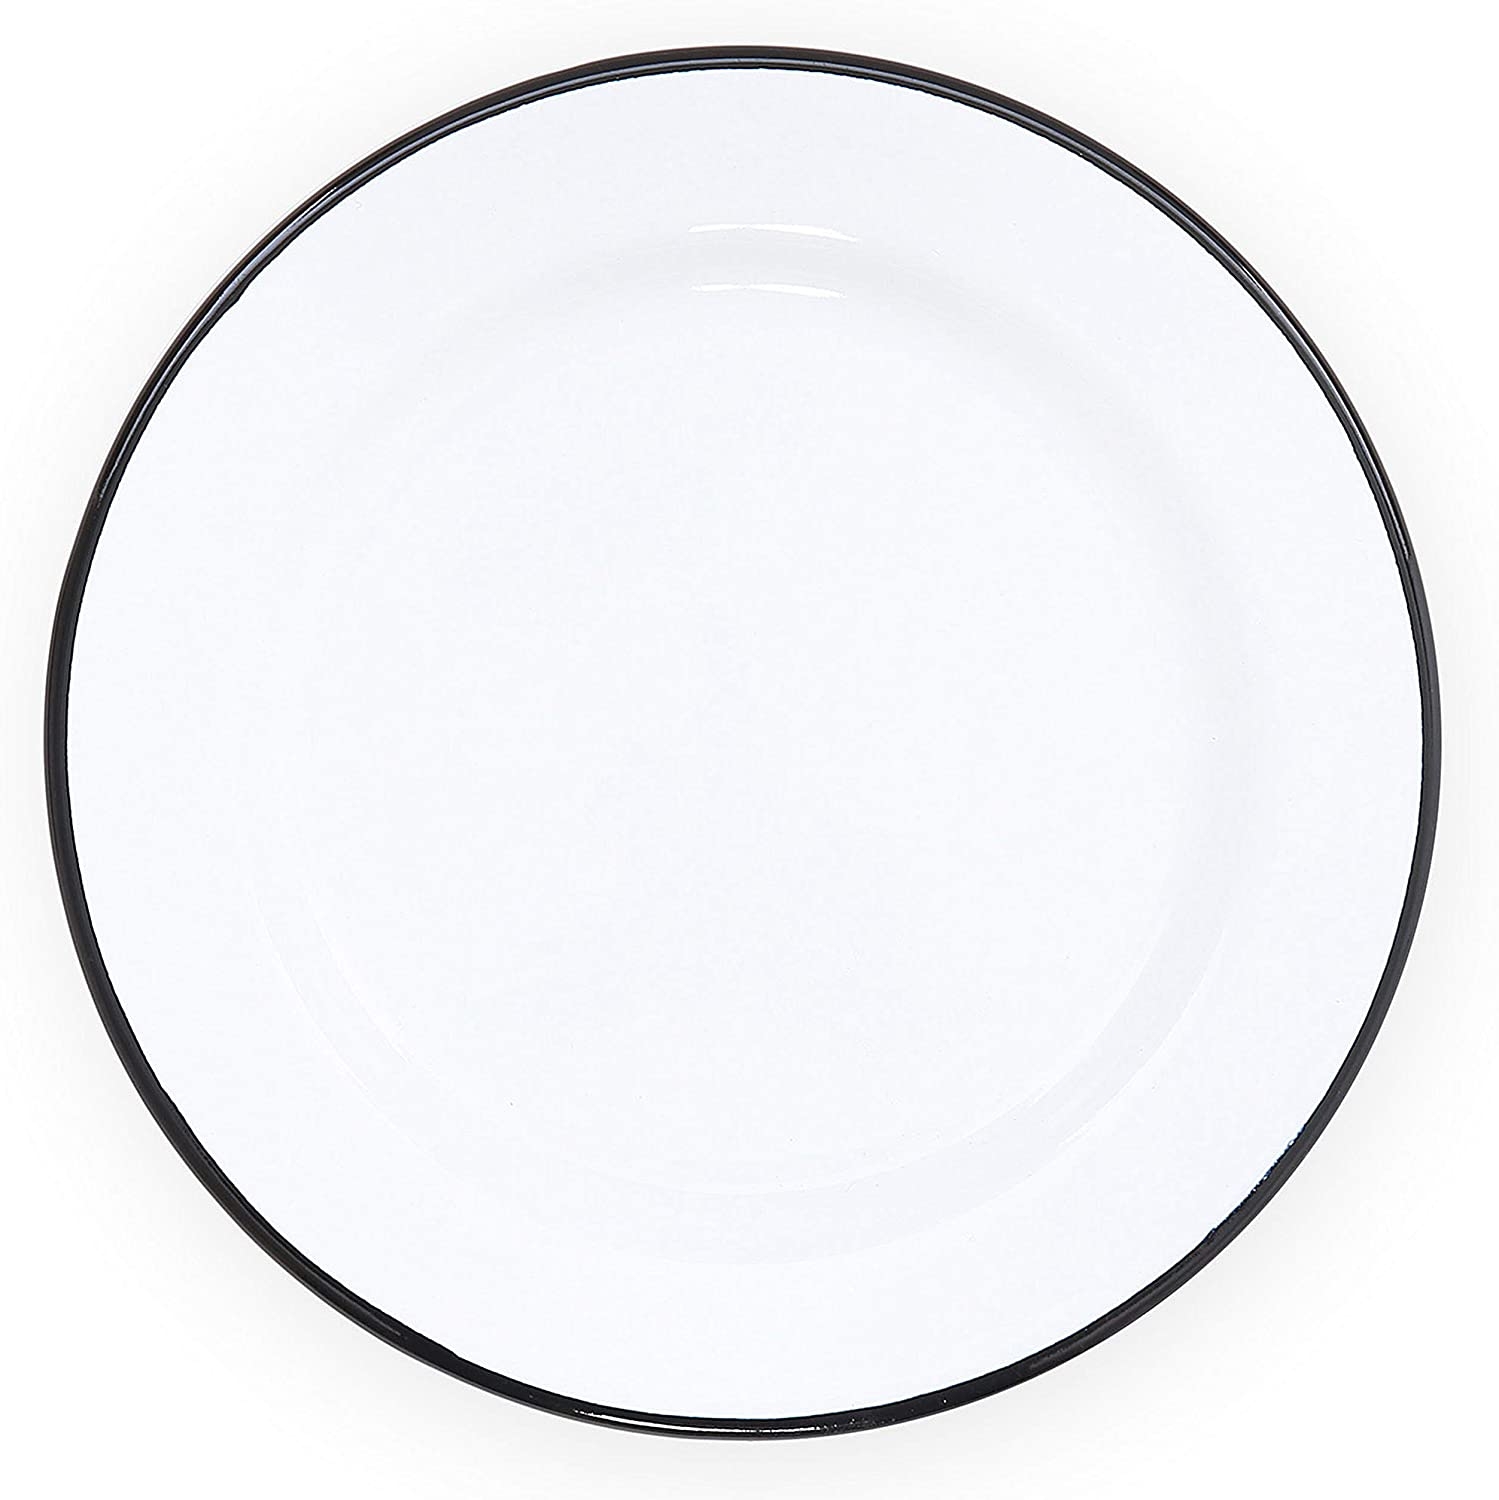 Каемка тарелки. Белая тарелка. Тарелка плоская. Прозрачная тарелка. Круглая тарелка.